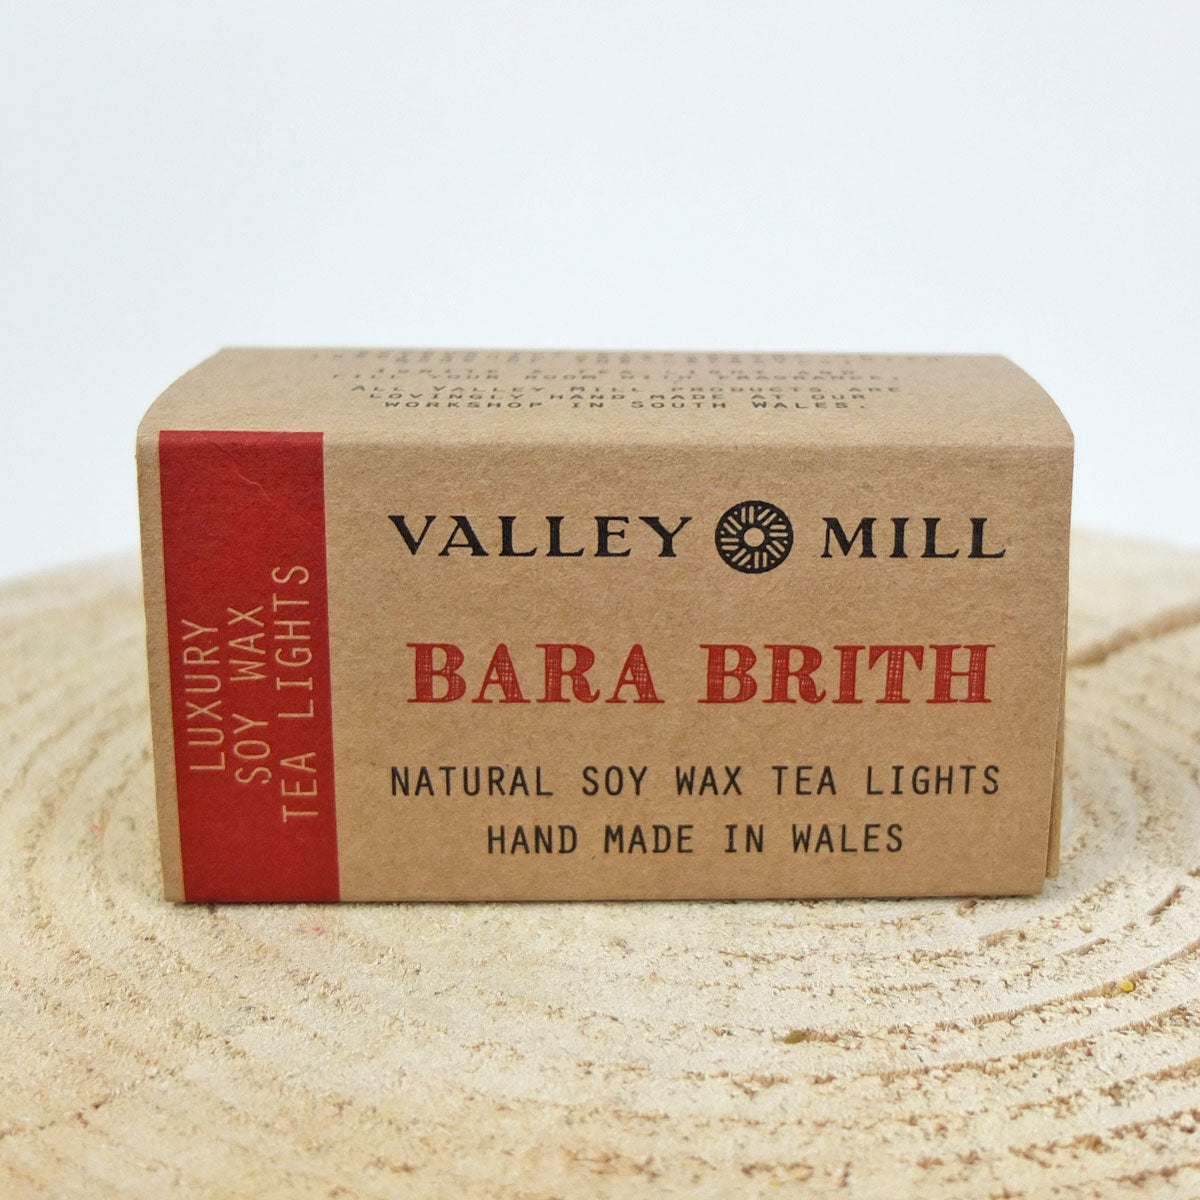 Valley Mill Bara Brith Tea Lights